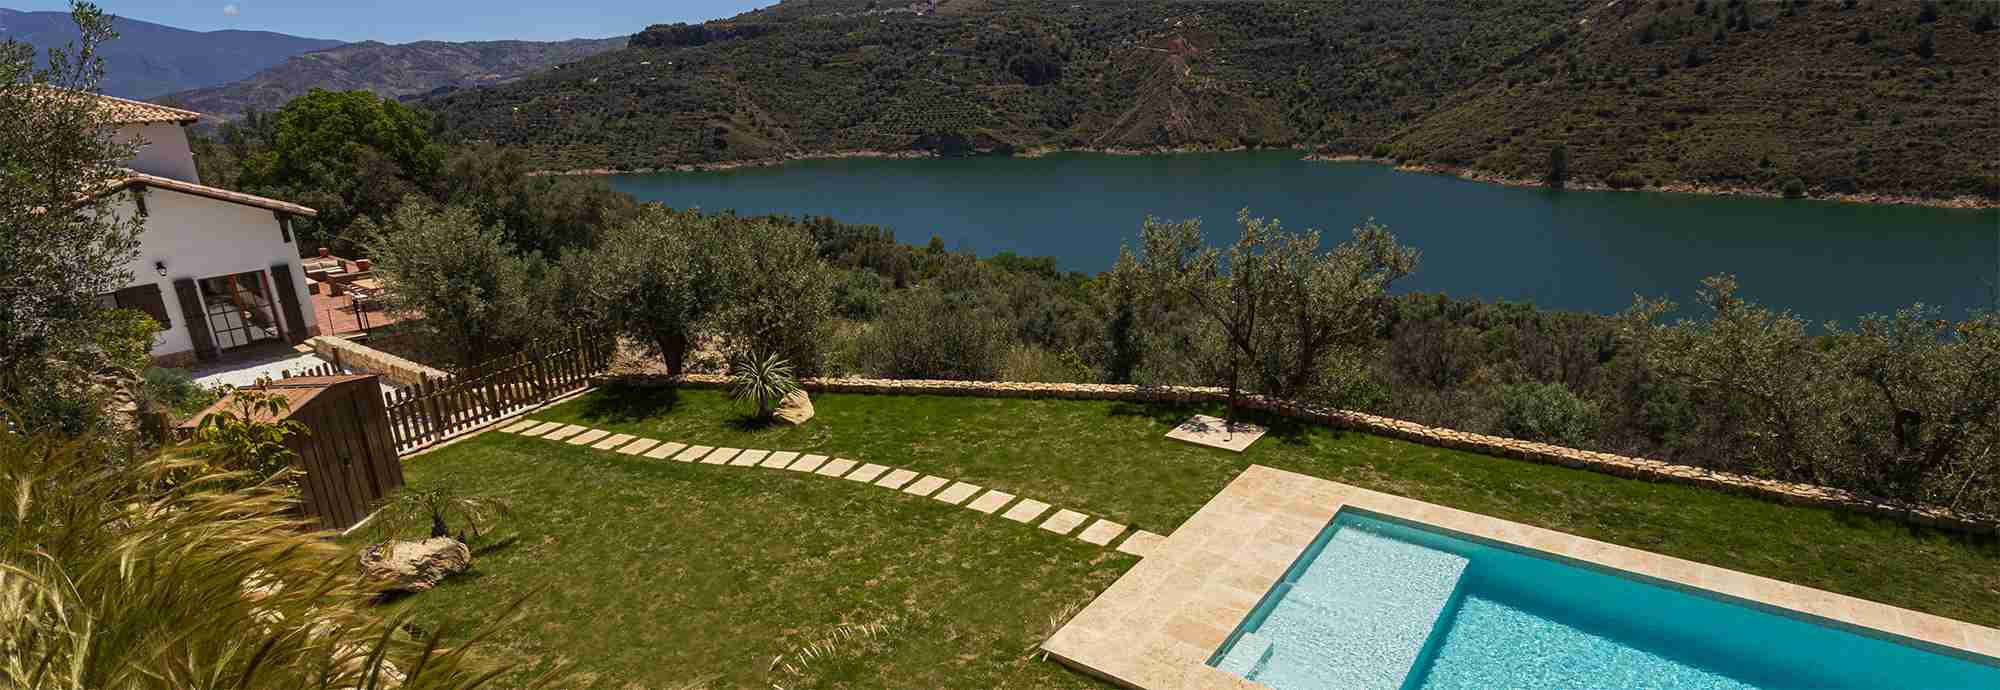 Villa en enclave privilegiado con zona de piscina excepcional